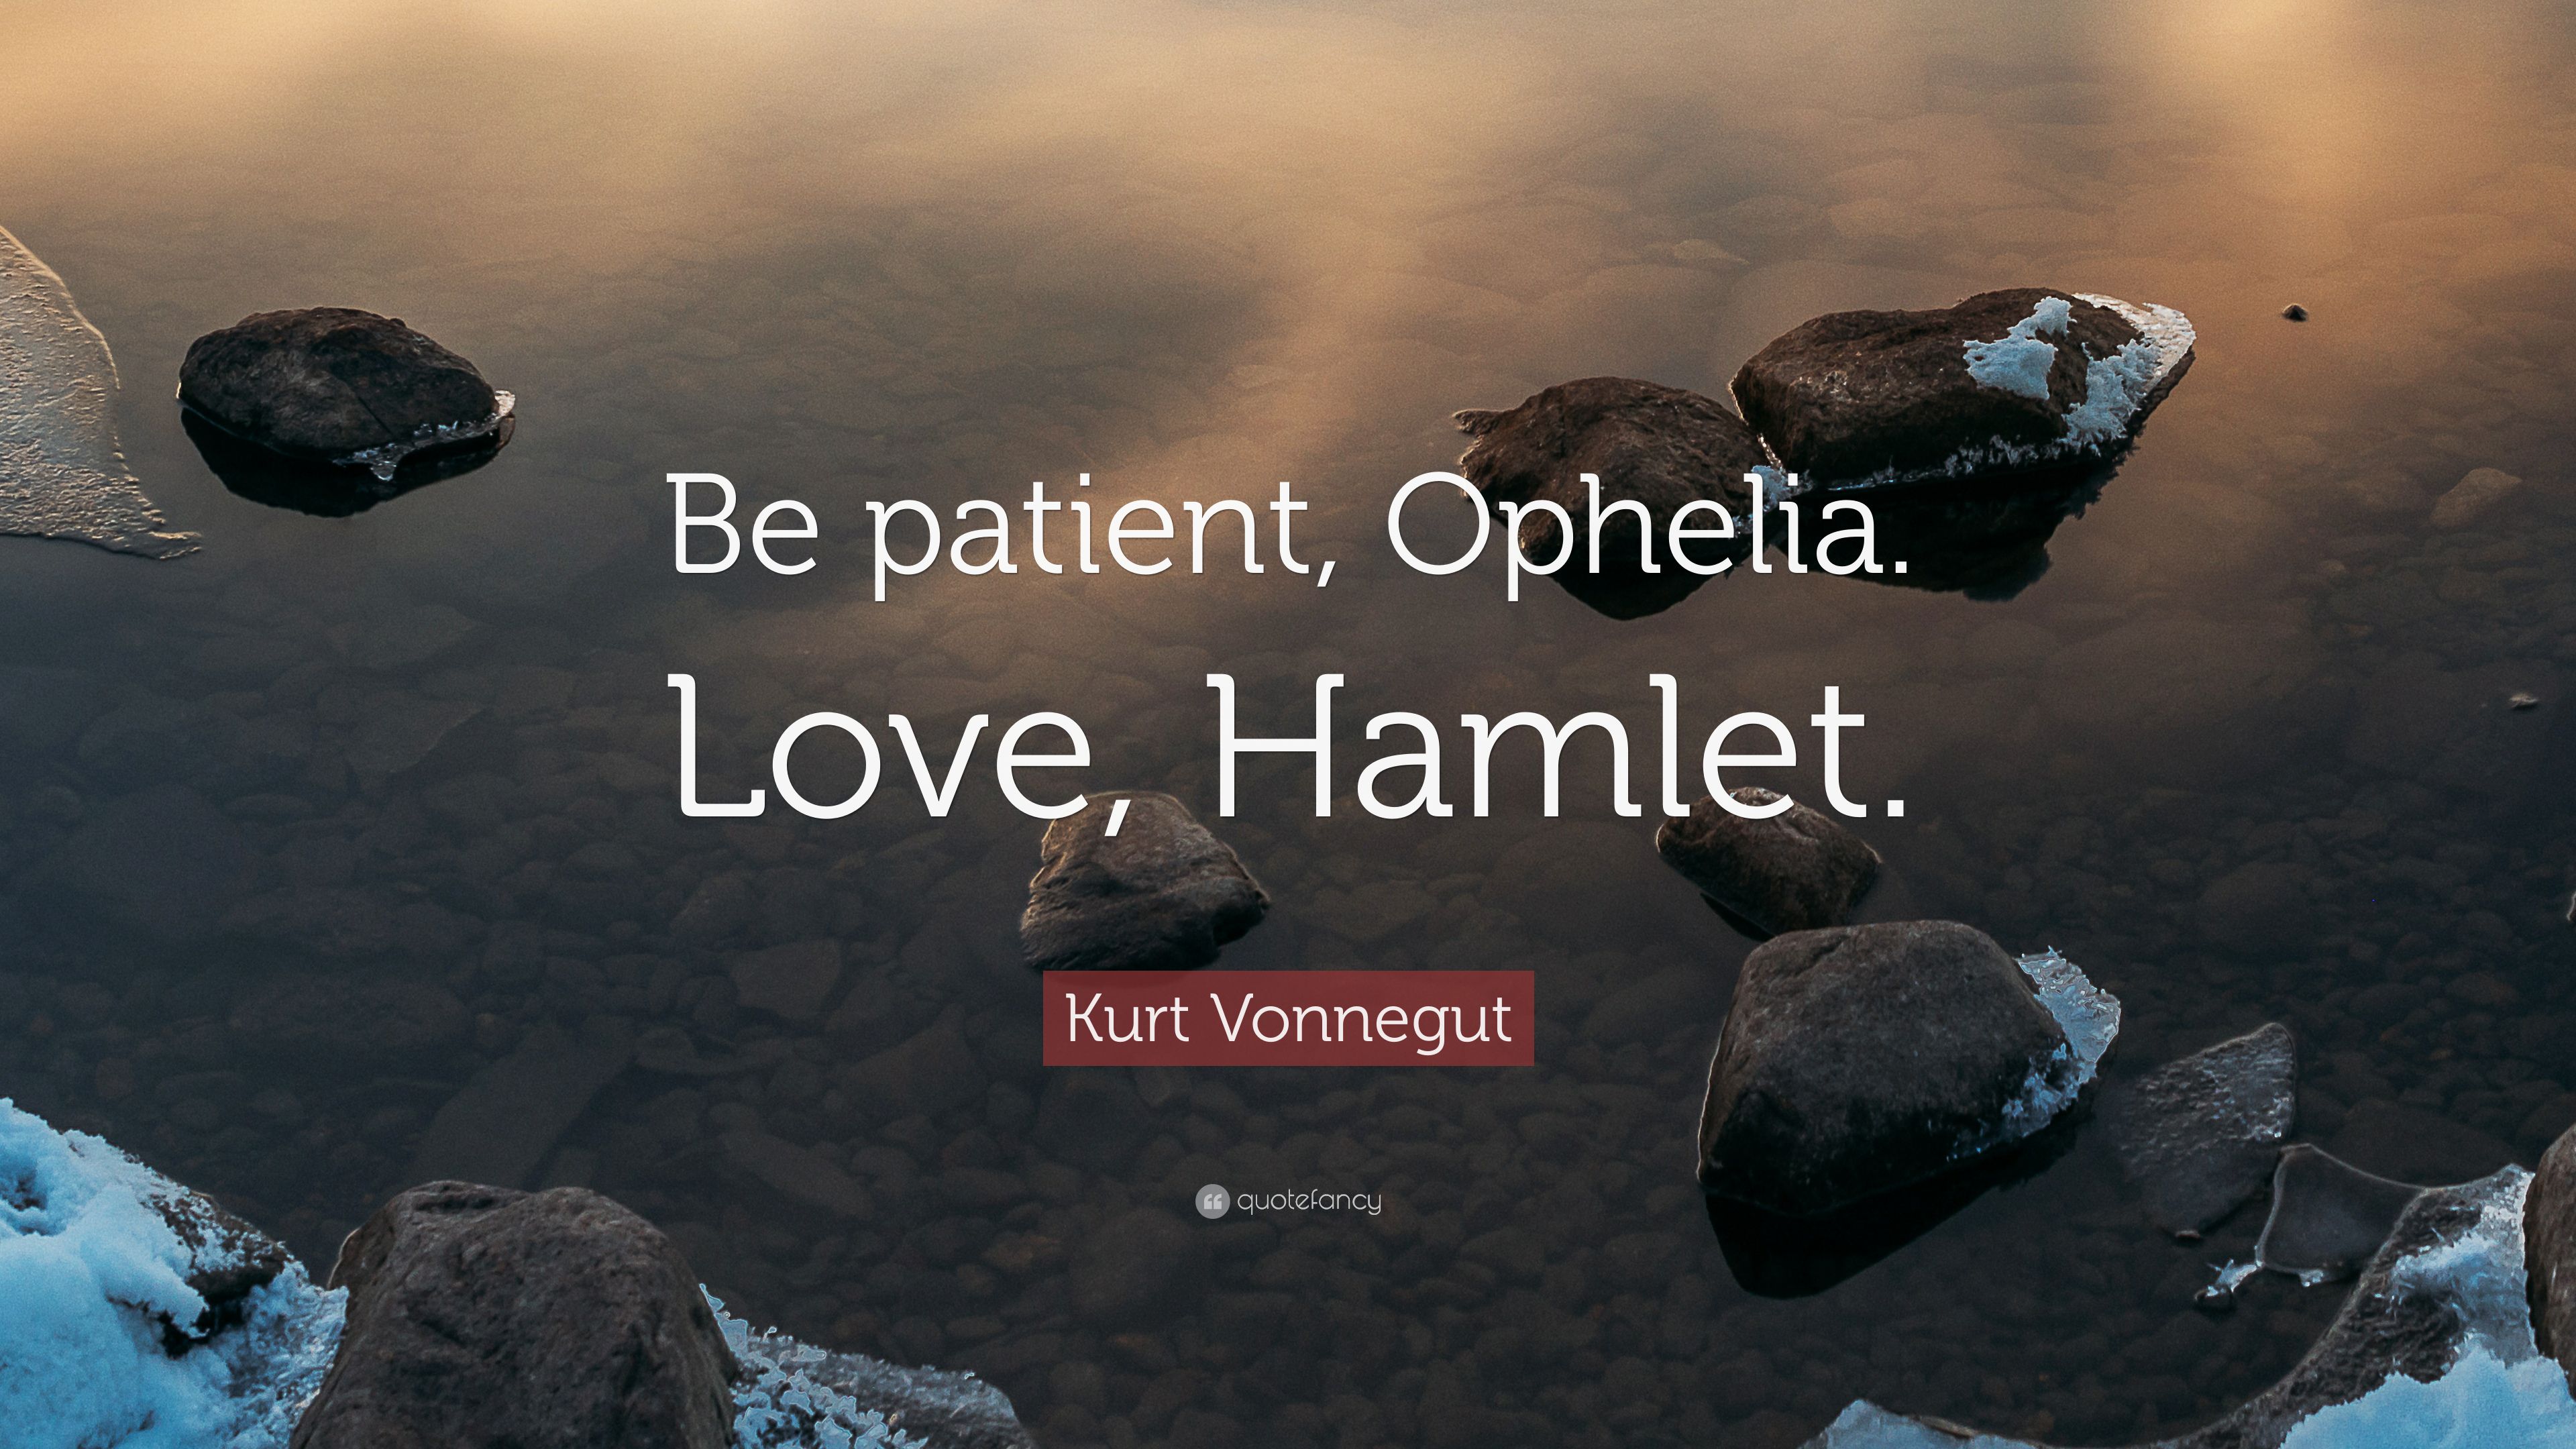 Kurt Vonnegut Quote: “Be patient, Ophelia. Love, Hamlet.” 9